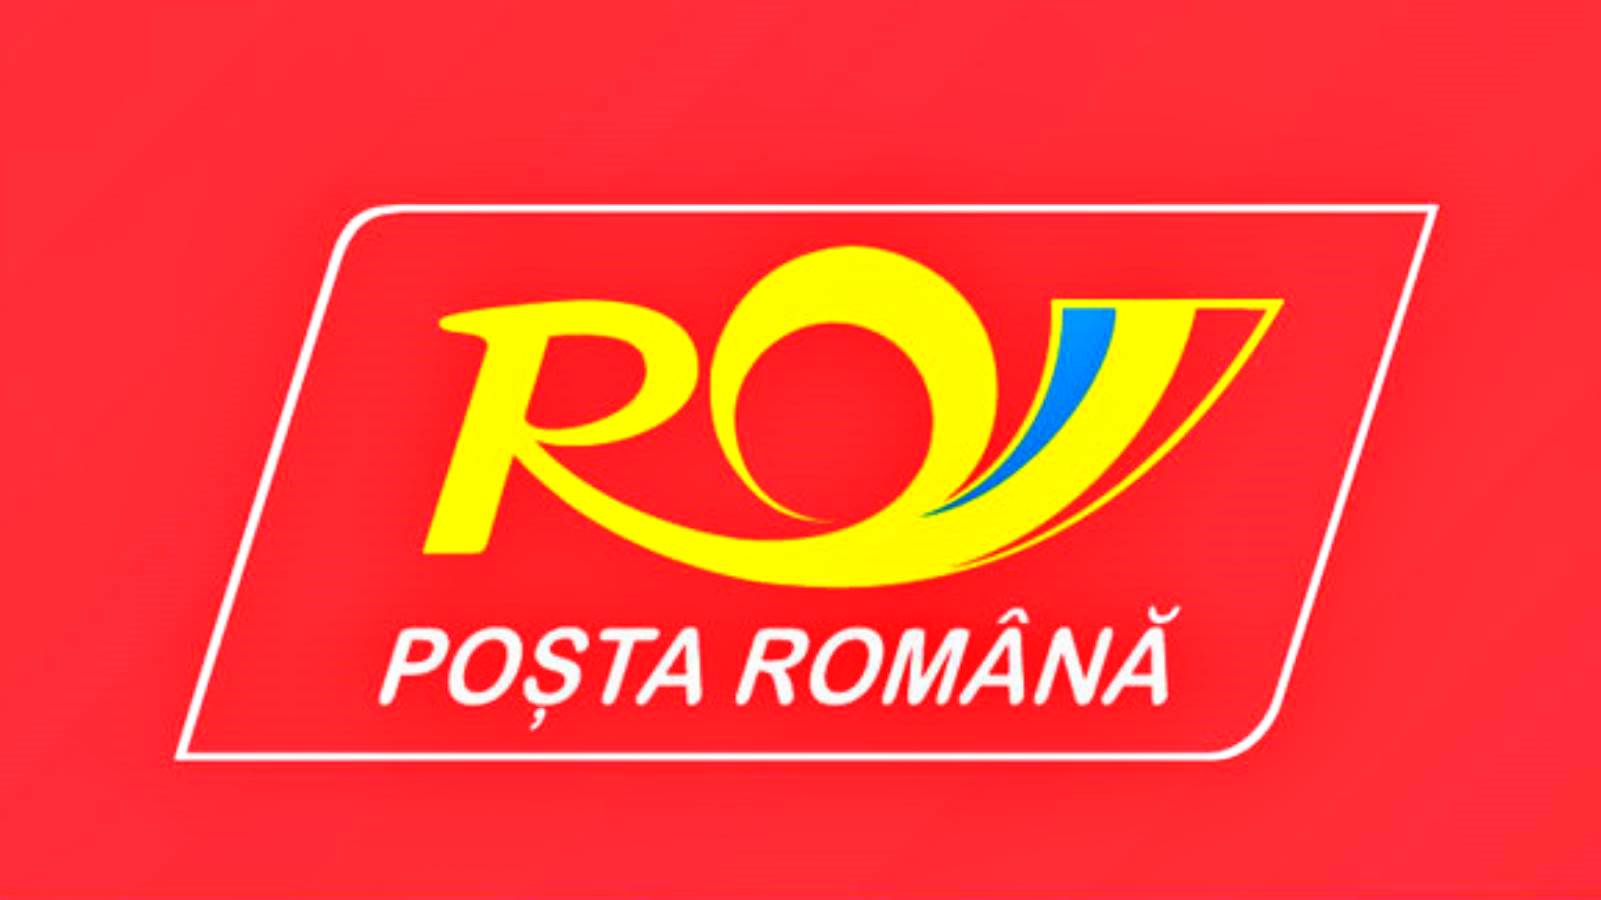 Posta Romania annuncia importanti modifiche ai passaporti rumeni